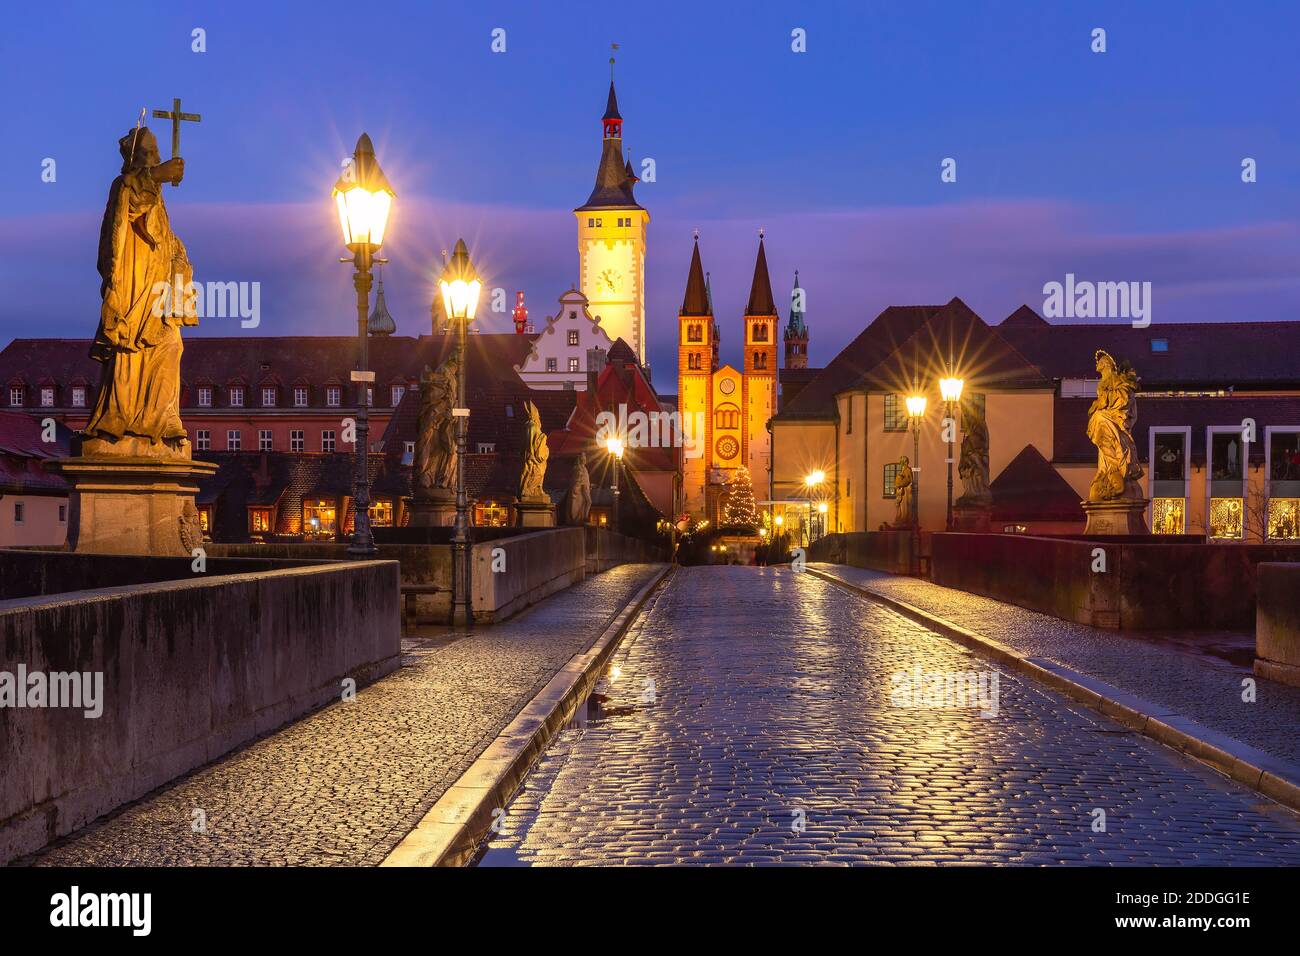 Alte Mainbrücke, Alte Mainbrucke mit Statuen von Heiligen, die Kathedrale und das Rathaus in der Altstadt von Würzburg bei Sonnenuntergang, Mittelfranken, Bayern, Deutschland Stockfoto